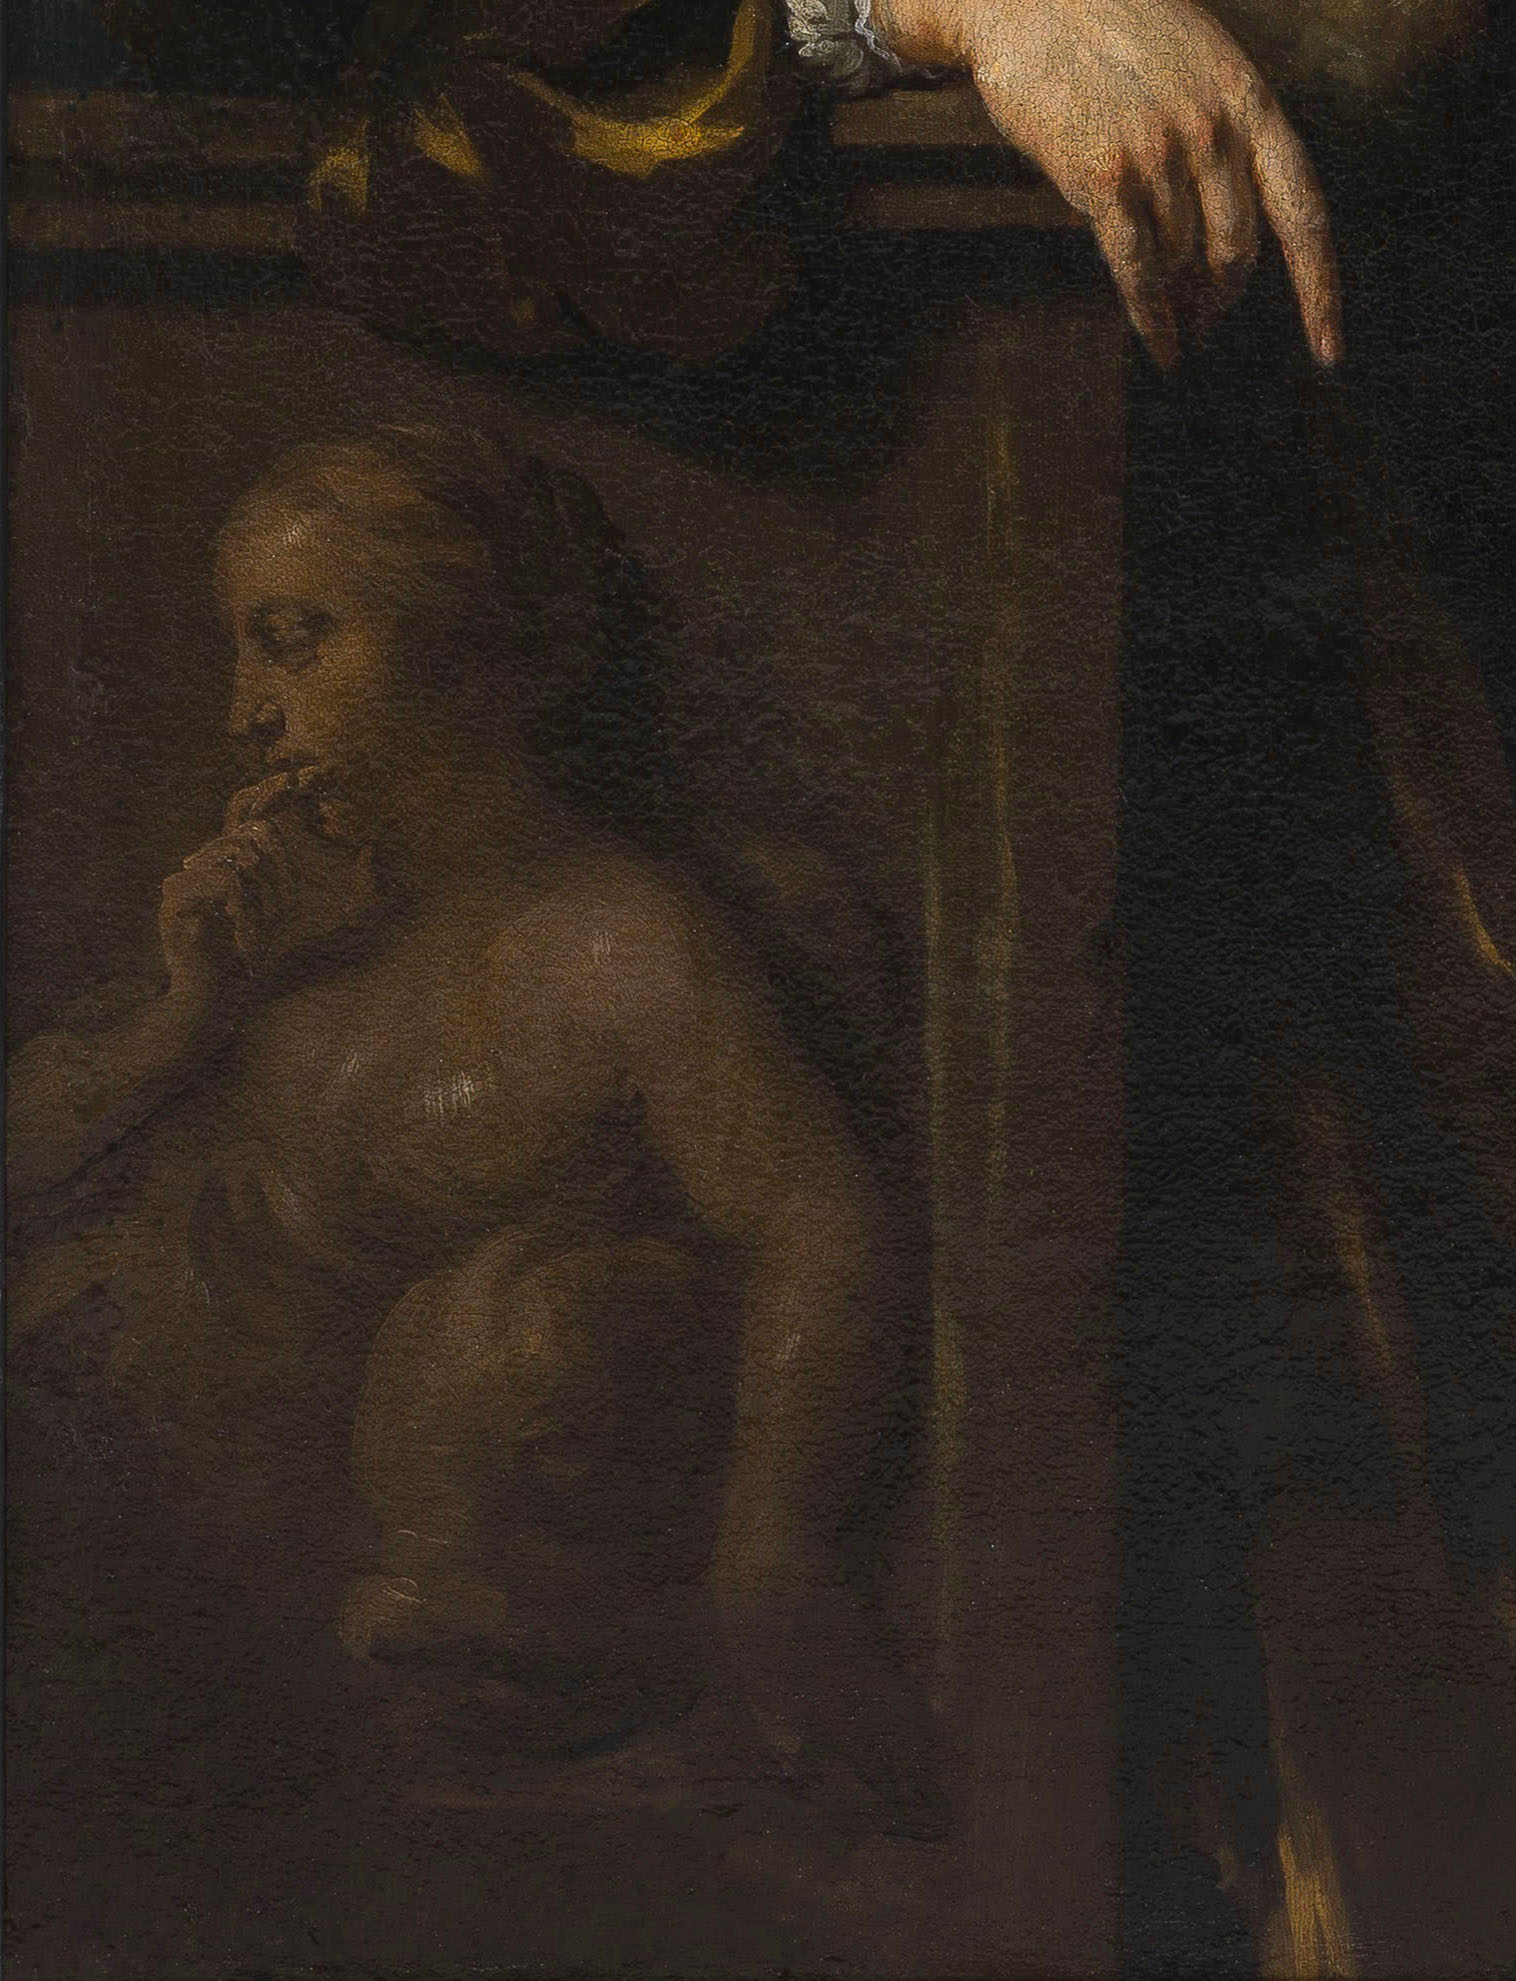 Nicolaes Maes (1634–1693)